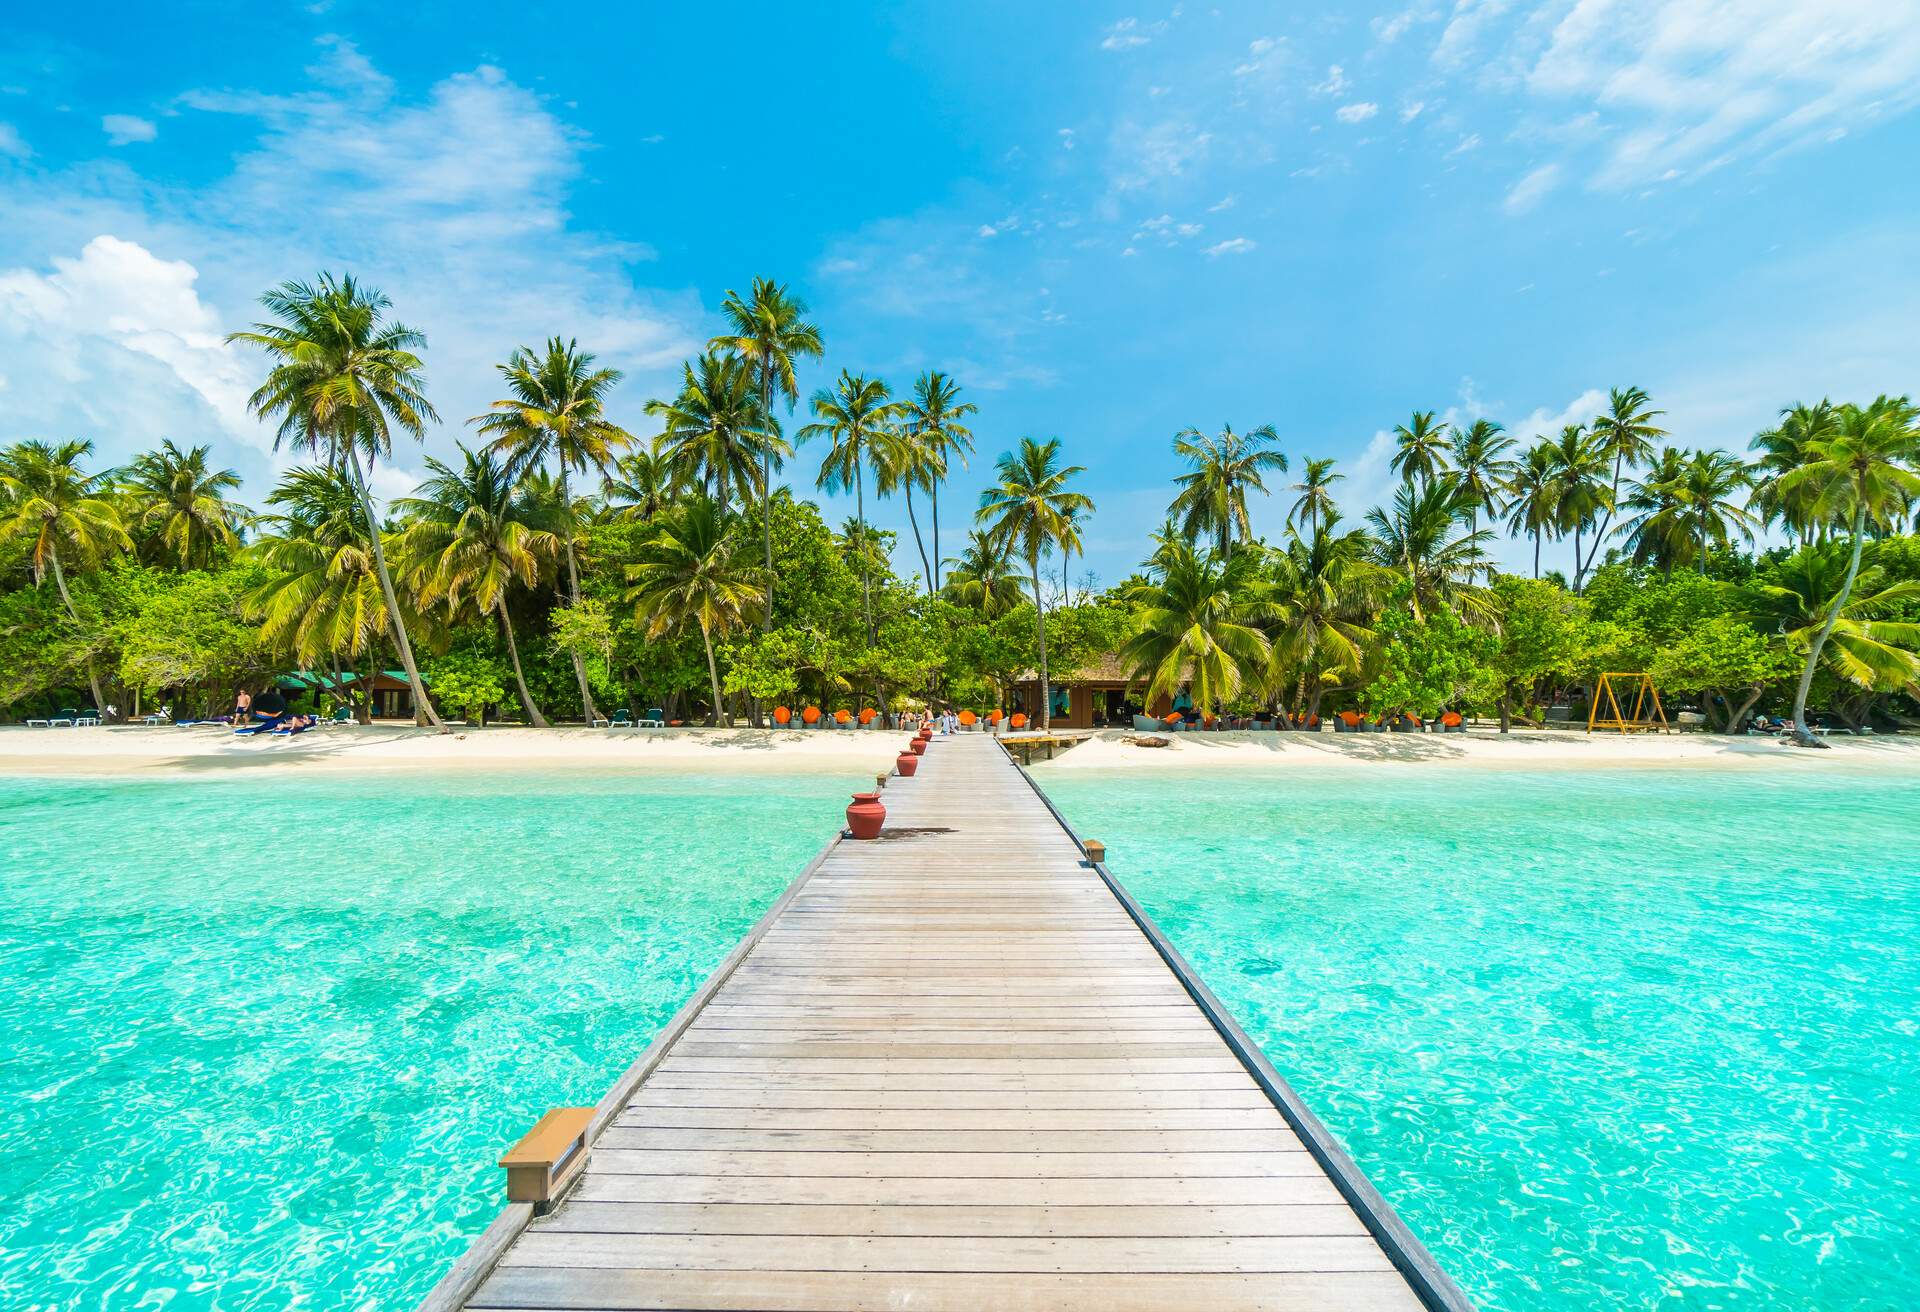 Uno de los mejores lugares de luna de miel, las islas Maldivas